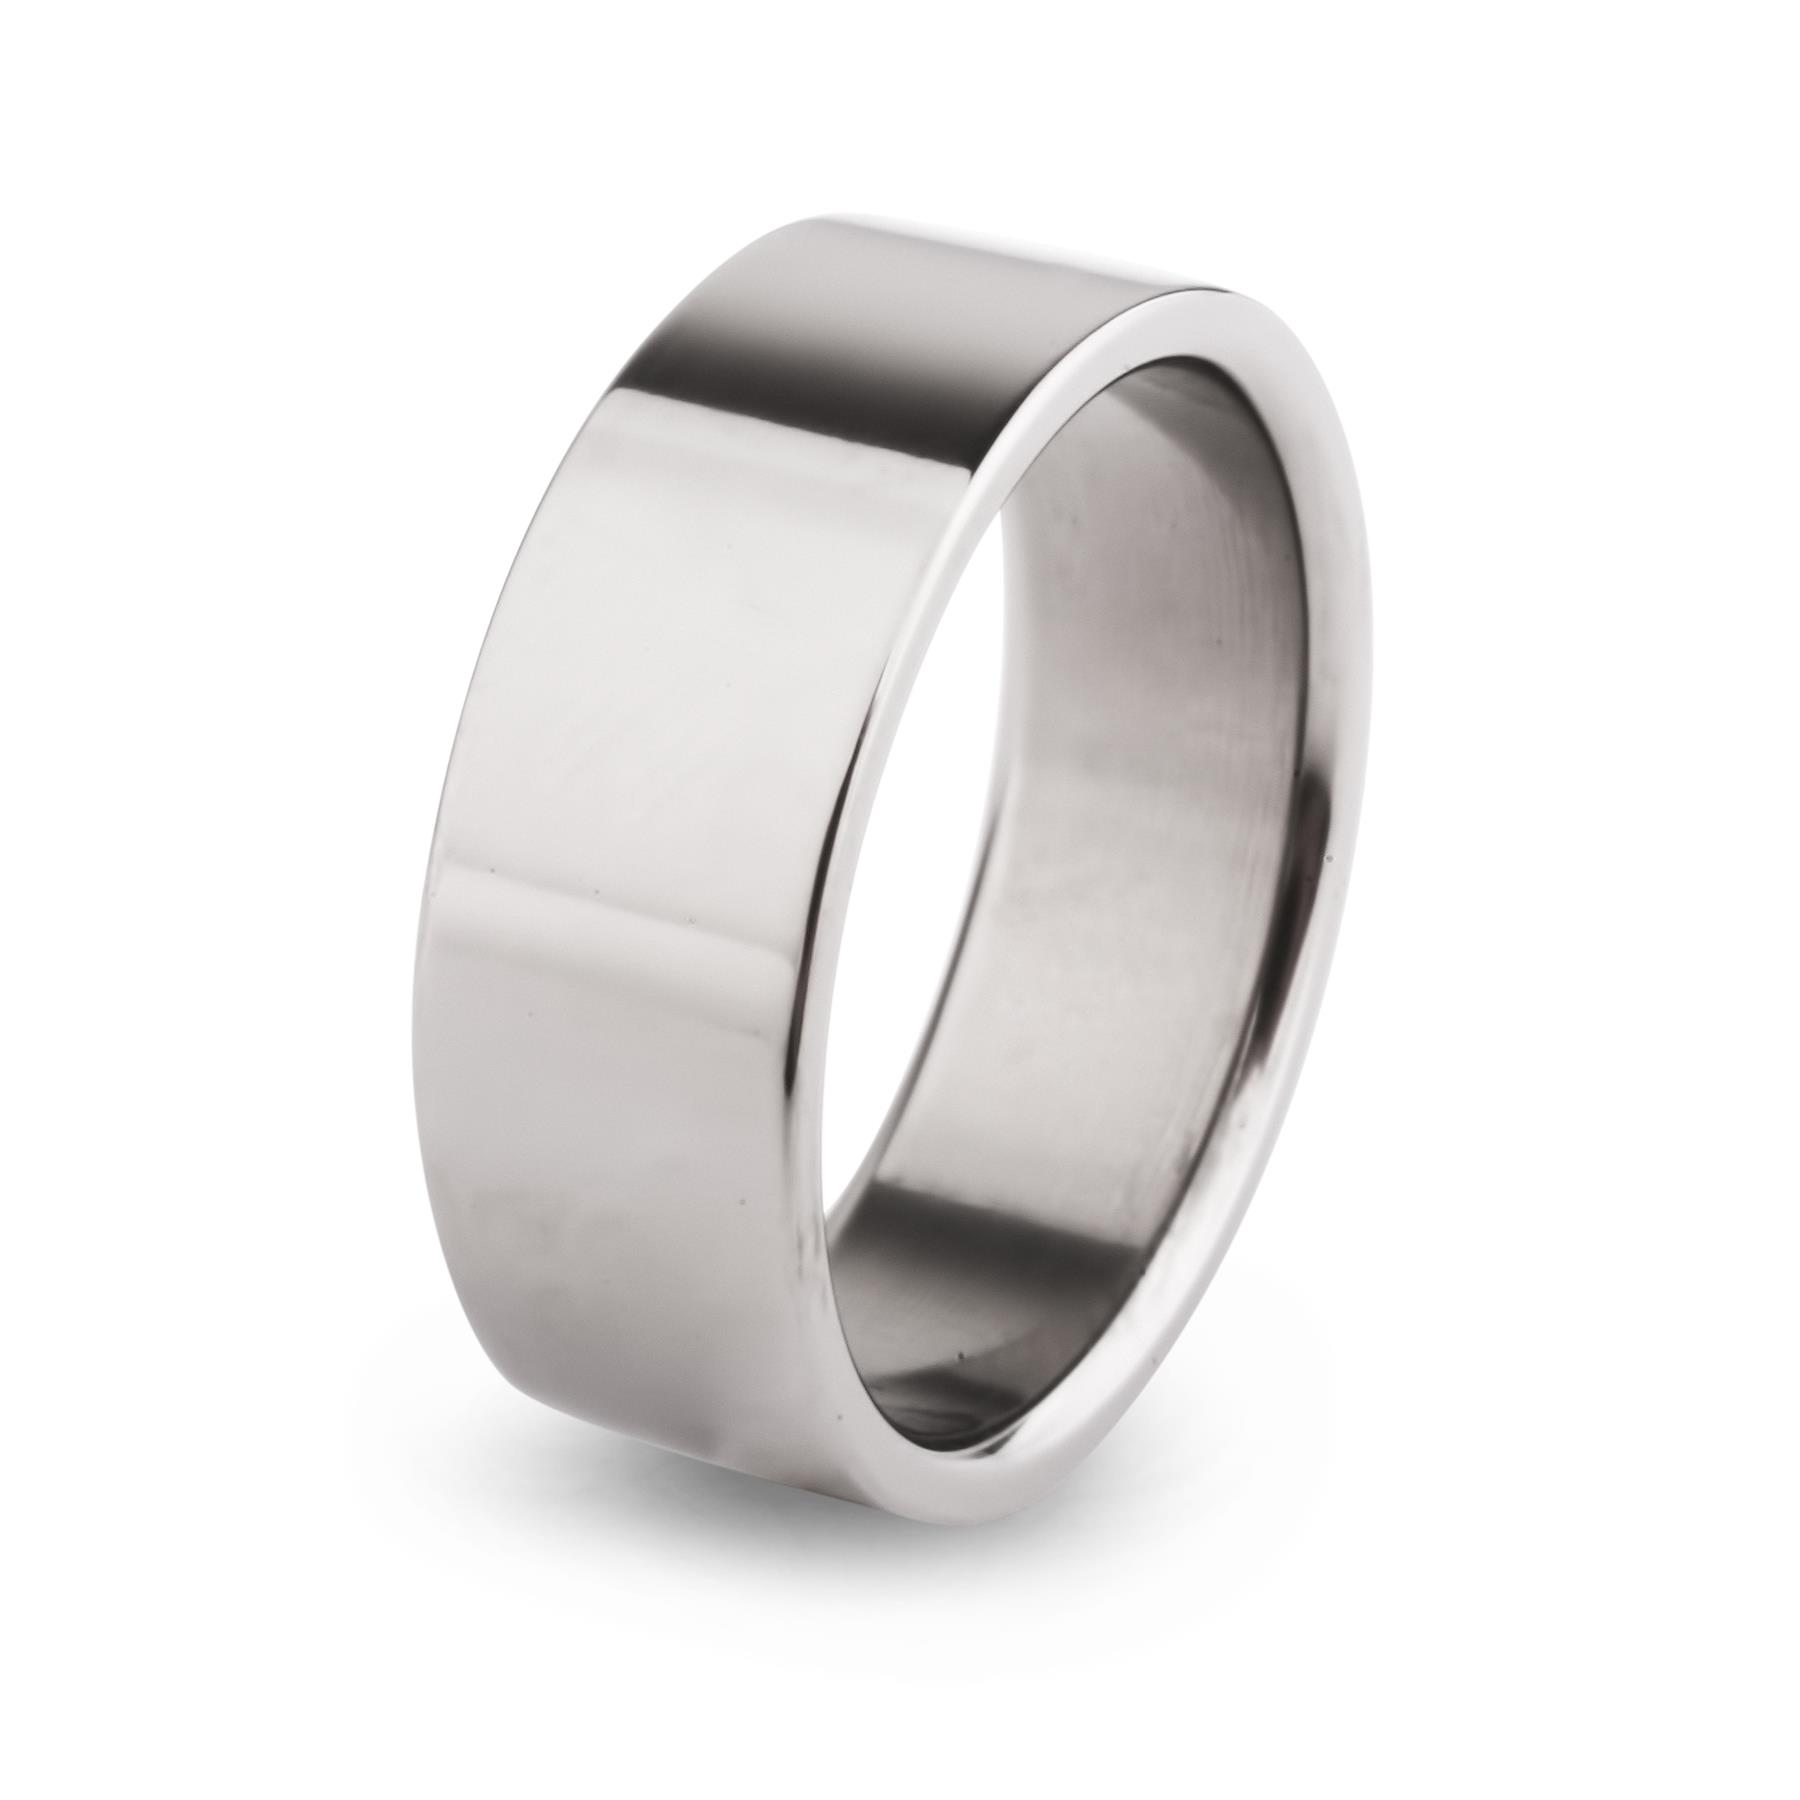 Титановое кольцо купить. Титанмет кольца. Обручальные кольца Титан. Кольцо т14101б066. Мужское обручальное кольцо Титан.